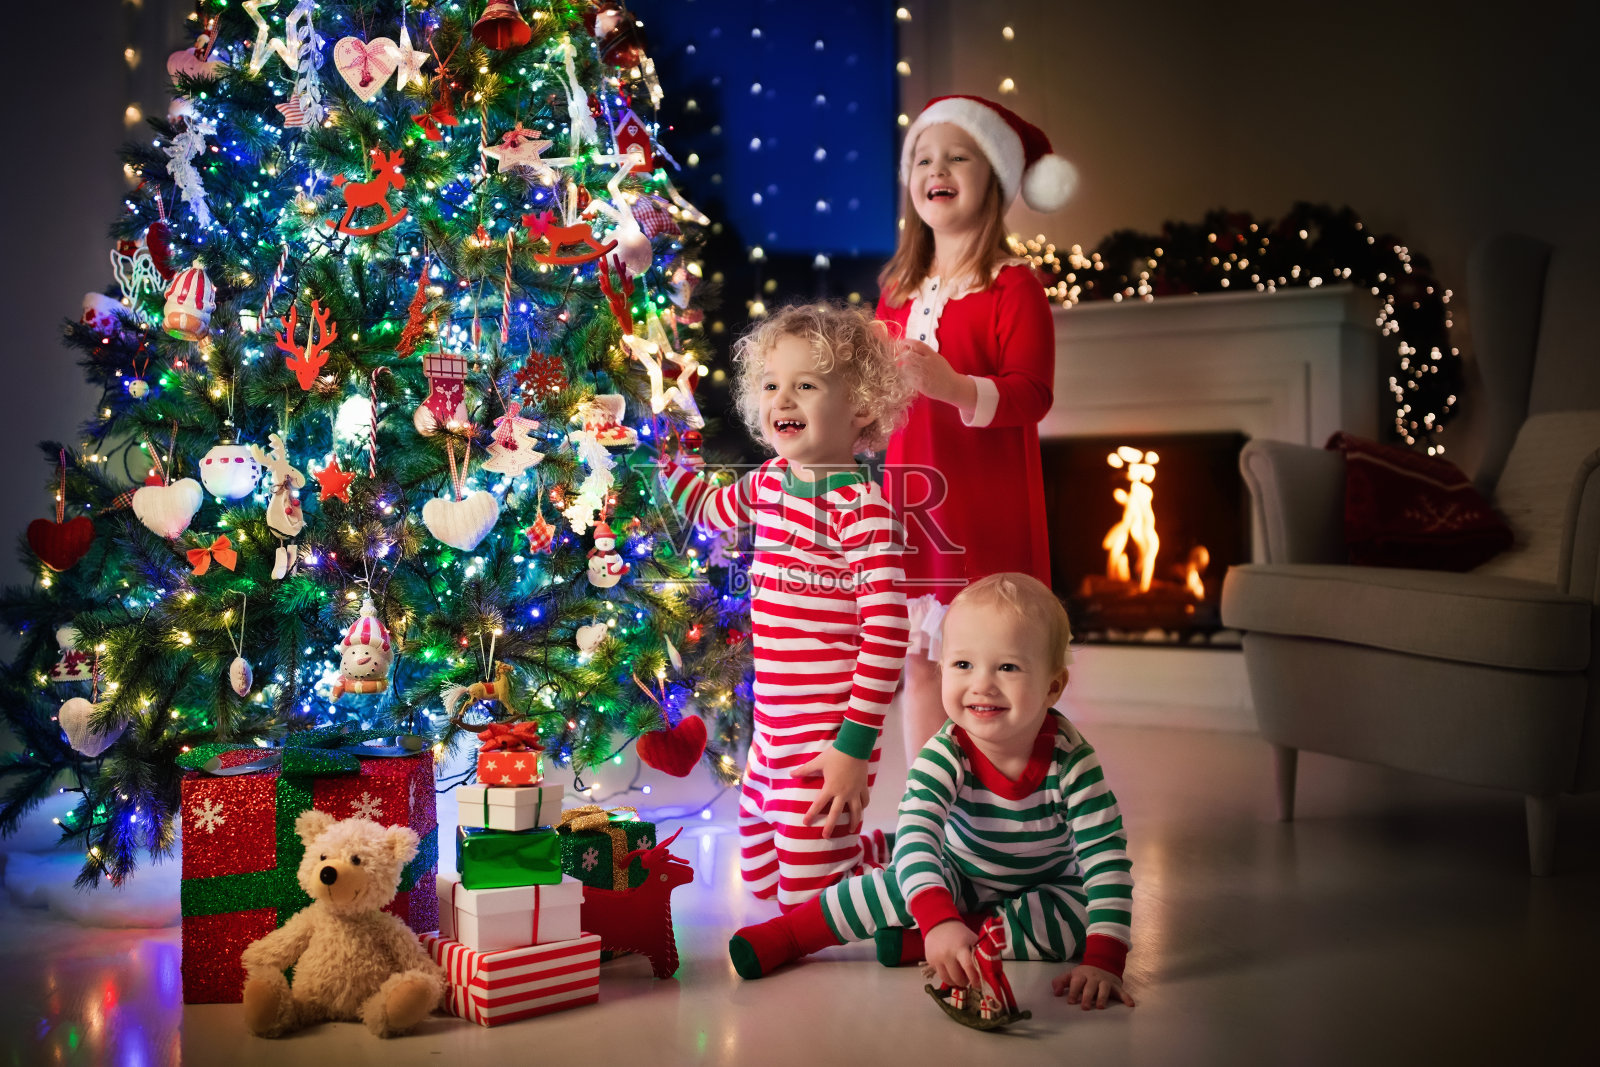 孩子们在圣诞树上。圣诞夜壁炉旁的孩子们照片摄影图片